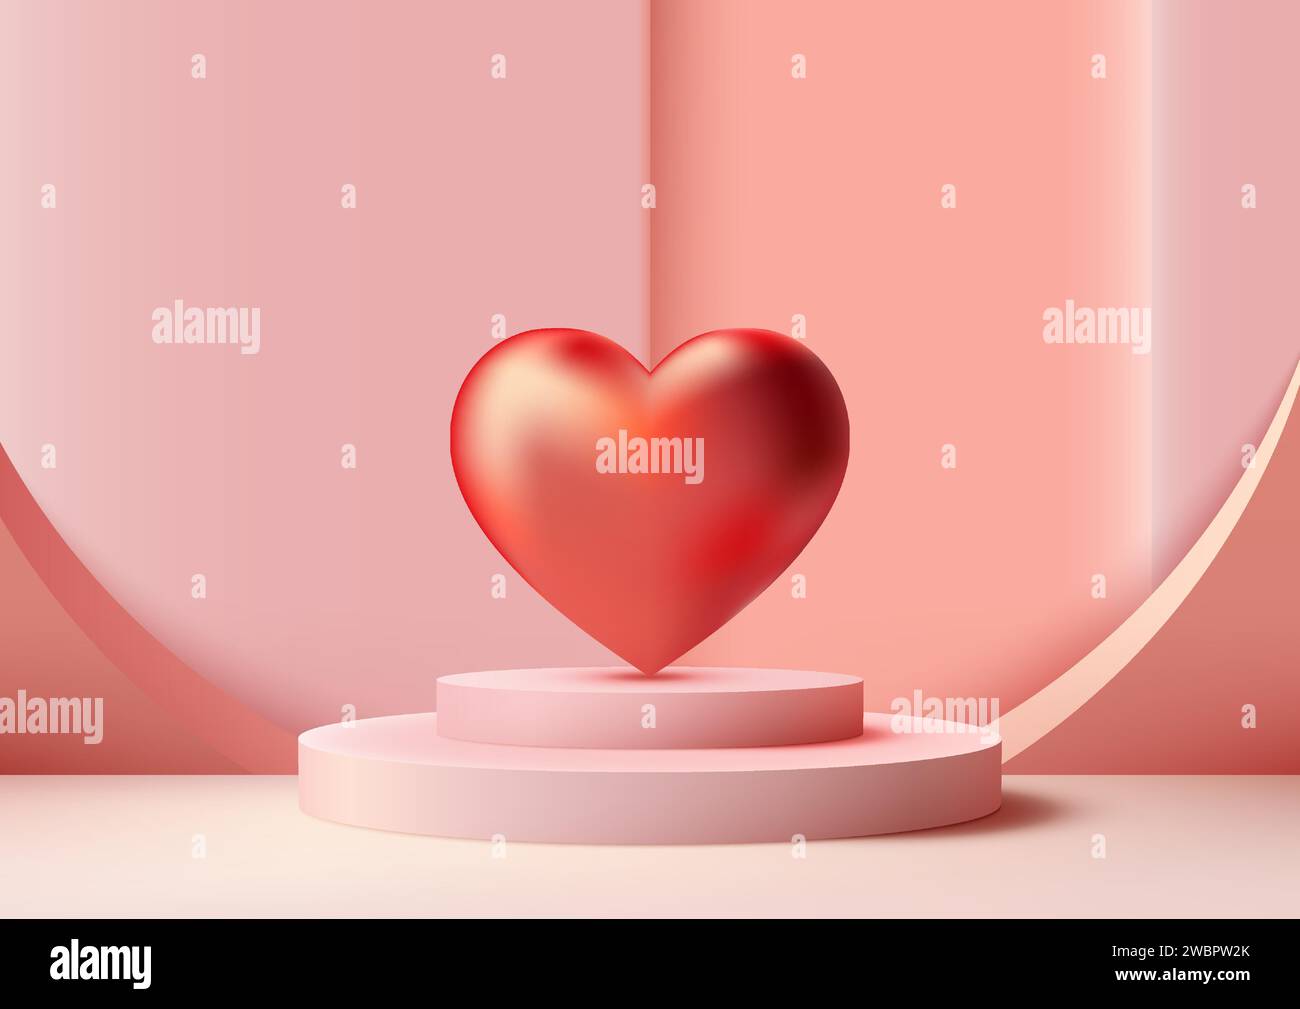 San Valentino in mostra con questo modello 3D rosa su podio. Elementi lucidi a cuore rosso con sfondo rosa tenue, perfetti per presentare prodotti, marchi, Illustrazione Vettoriale